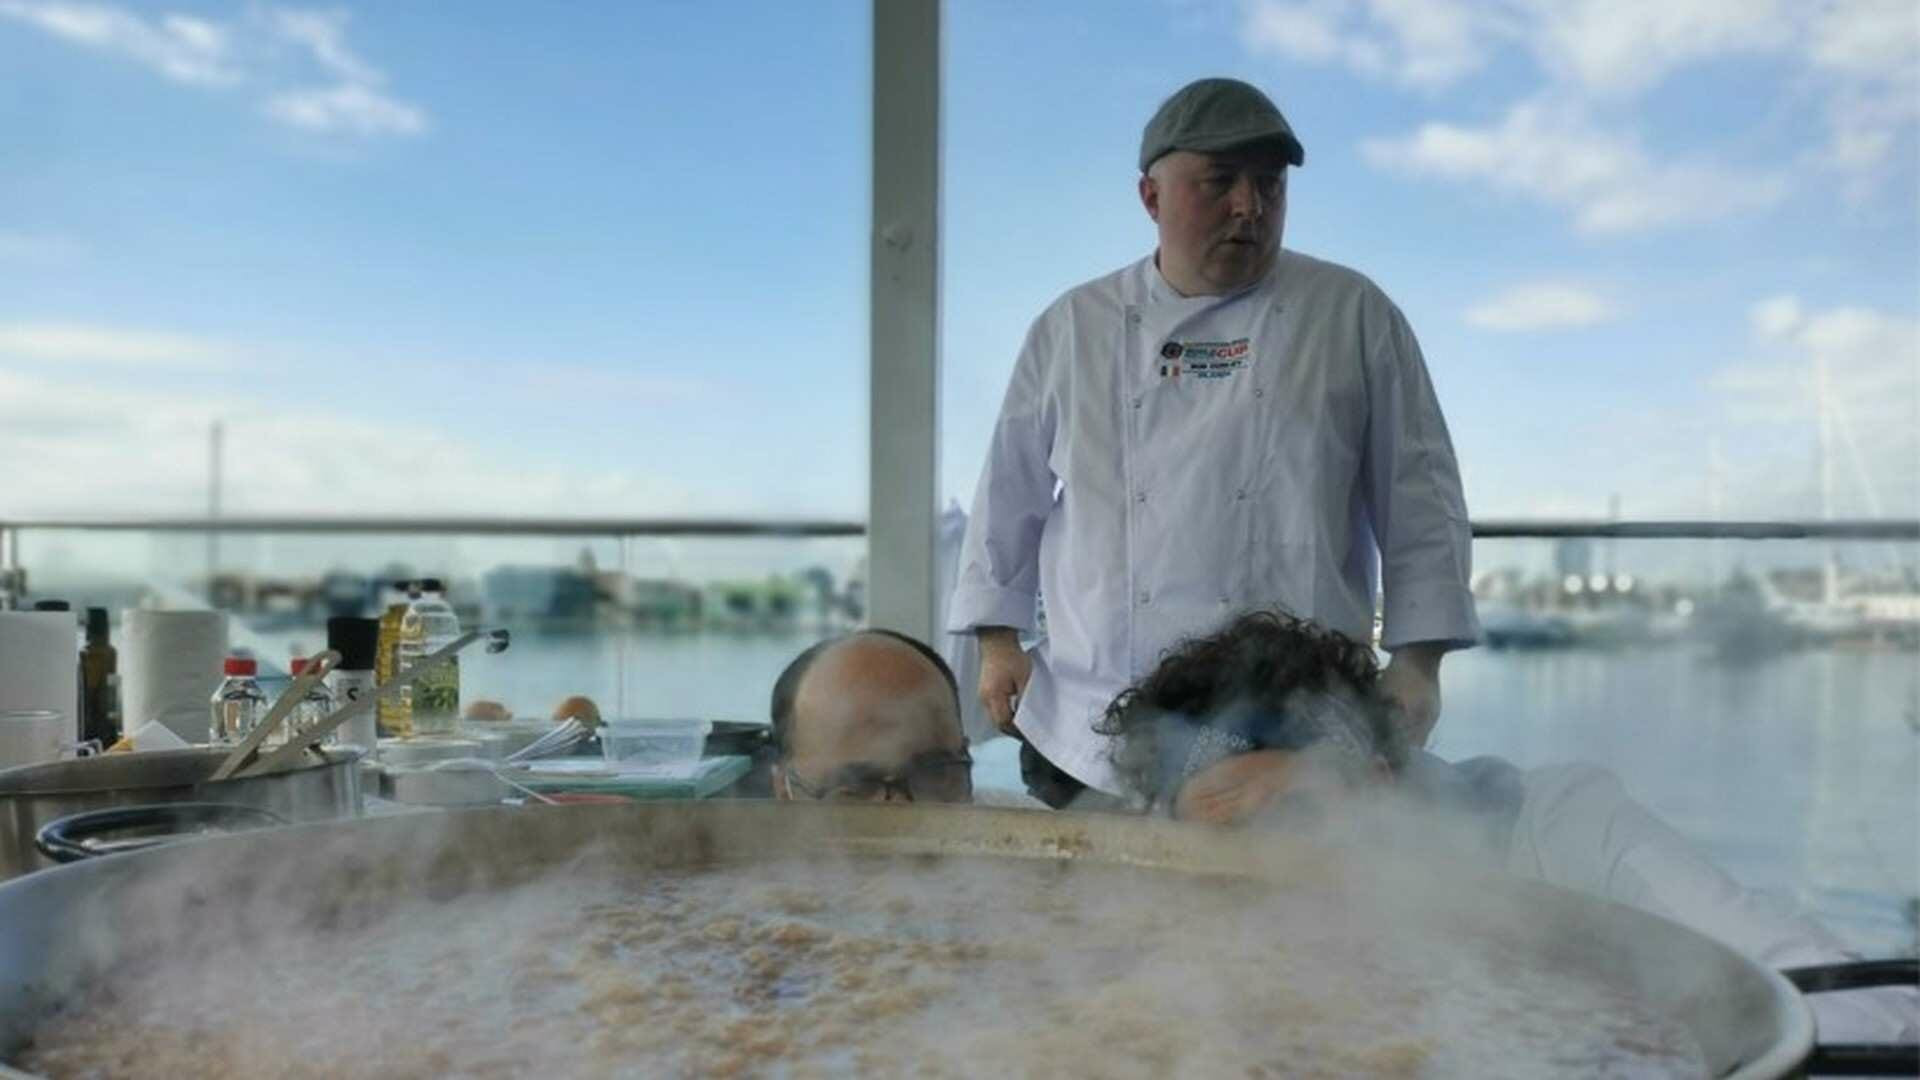 El chef Irlandés, cocinó una paella utilizando cerveza Guinness